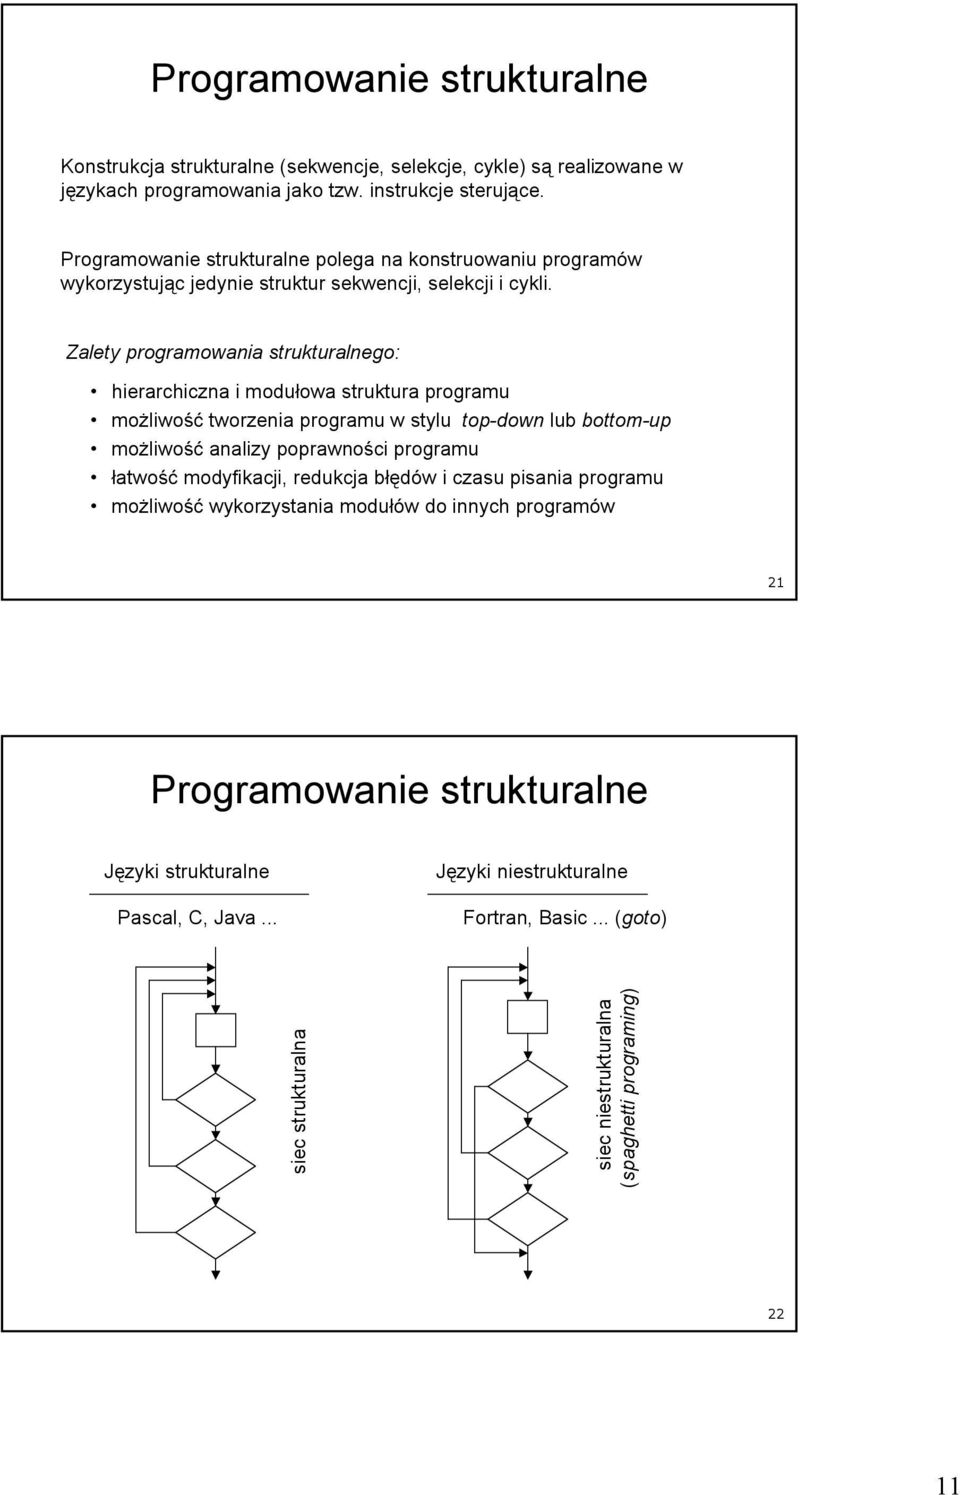 Zalety programowania strukturalnego: hierarchiczna i modułowa struktura programu moŝliwość tworzenia programu w stylu top-down lub bottom-up moŝliwość analizy poprawności programu łatwość